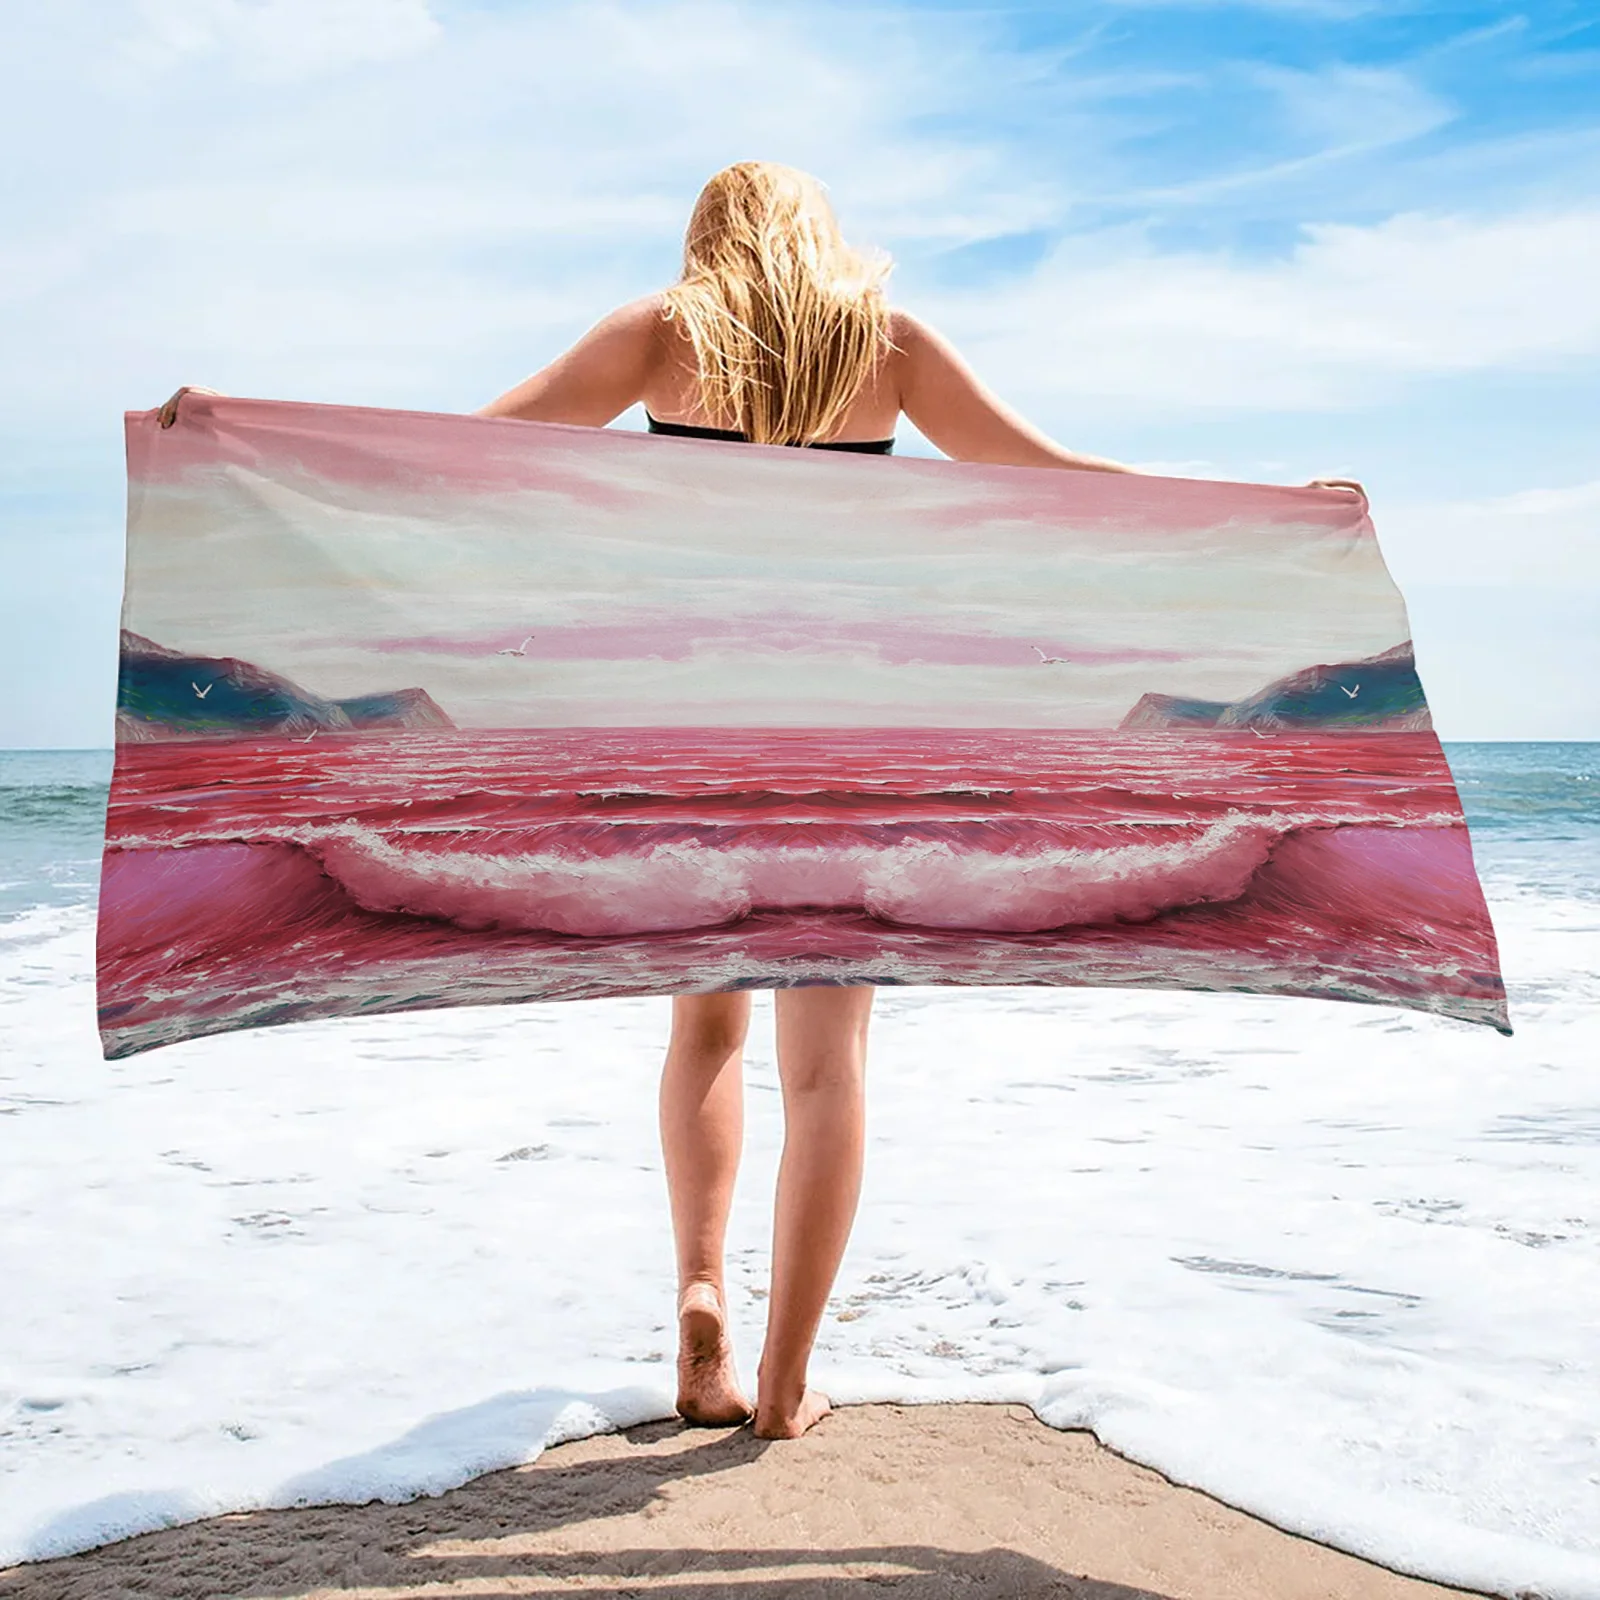 

Пляжное летнее художественное банное полотенце из микрофибры с красными волнами для ванной комнаты, бассейна, морского берега, мягкое пляж...